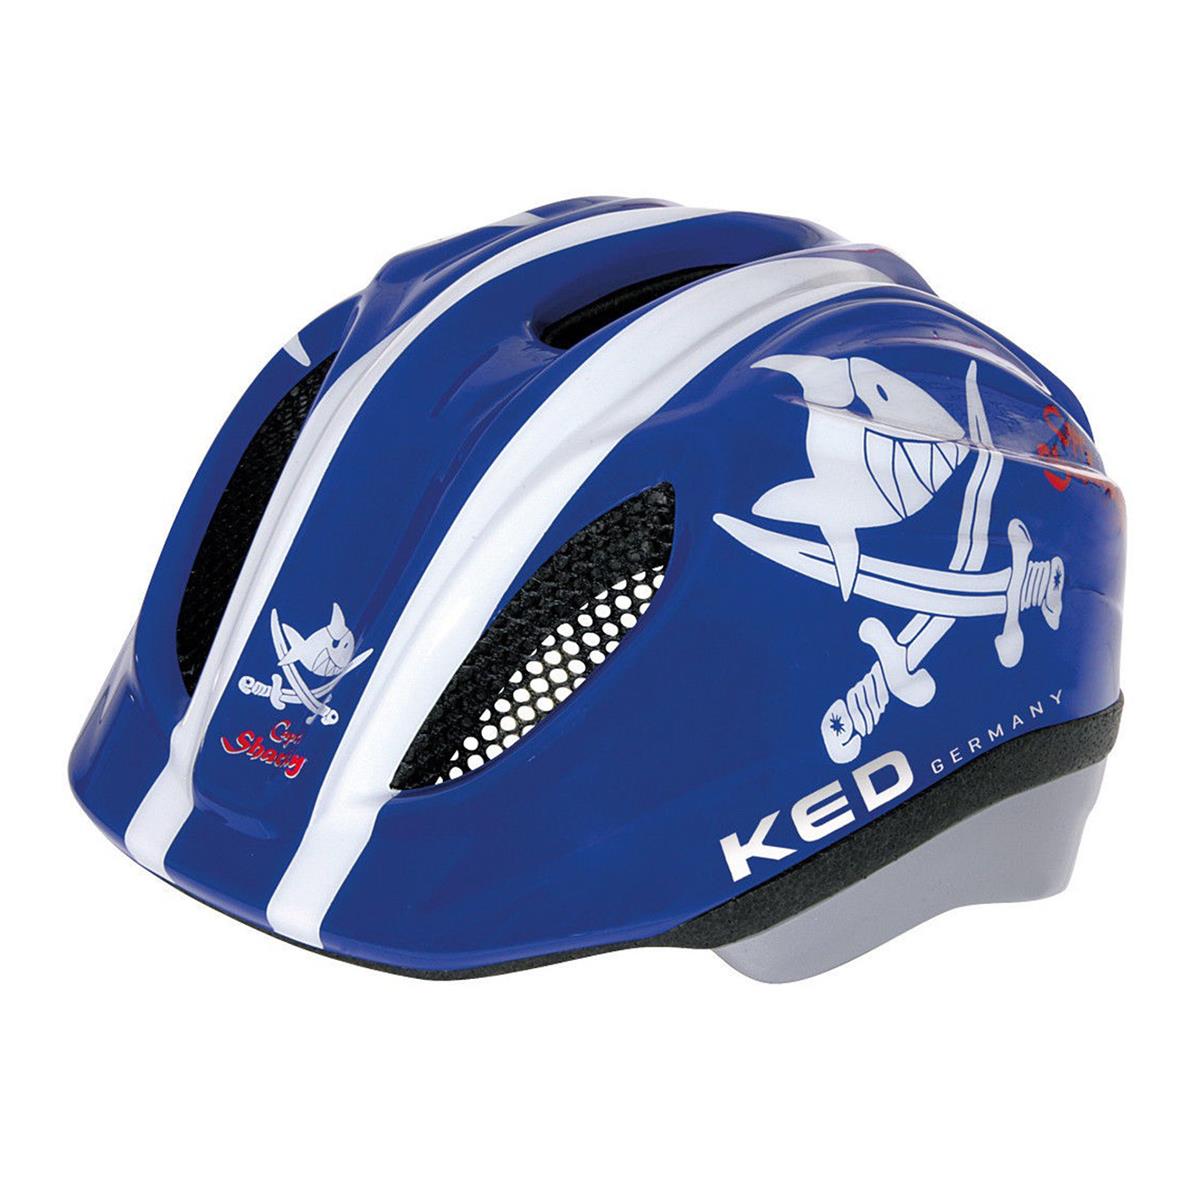 KED Kinder Helm Meggy II Capt'n Sharky blau  XS | 44-49cm